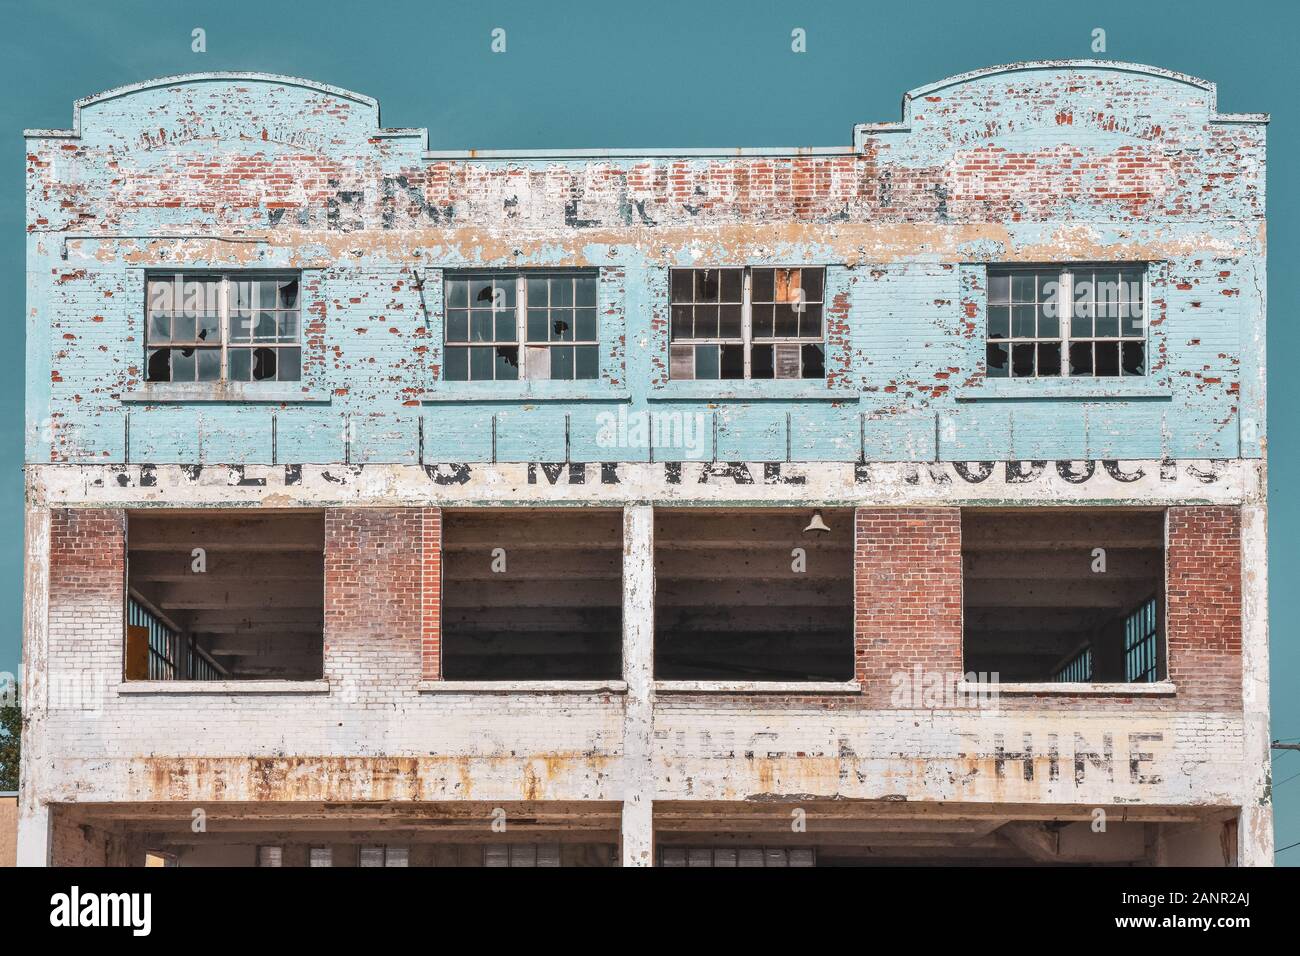 Concetto di decadimento. Edificio in rovina, con vernice scheggiato, mostrando i buoni tempi del passato. Gananoque, Ontario, Canada. Foto Stock